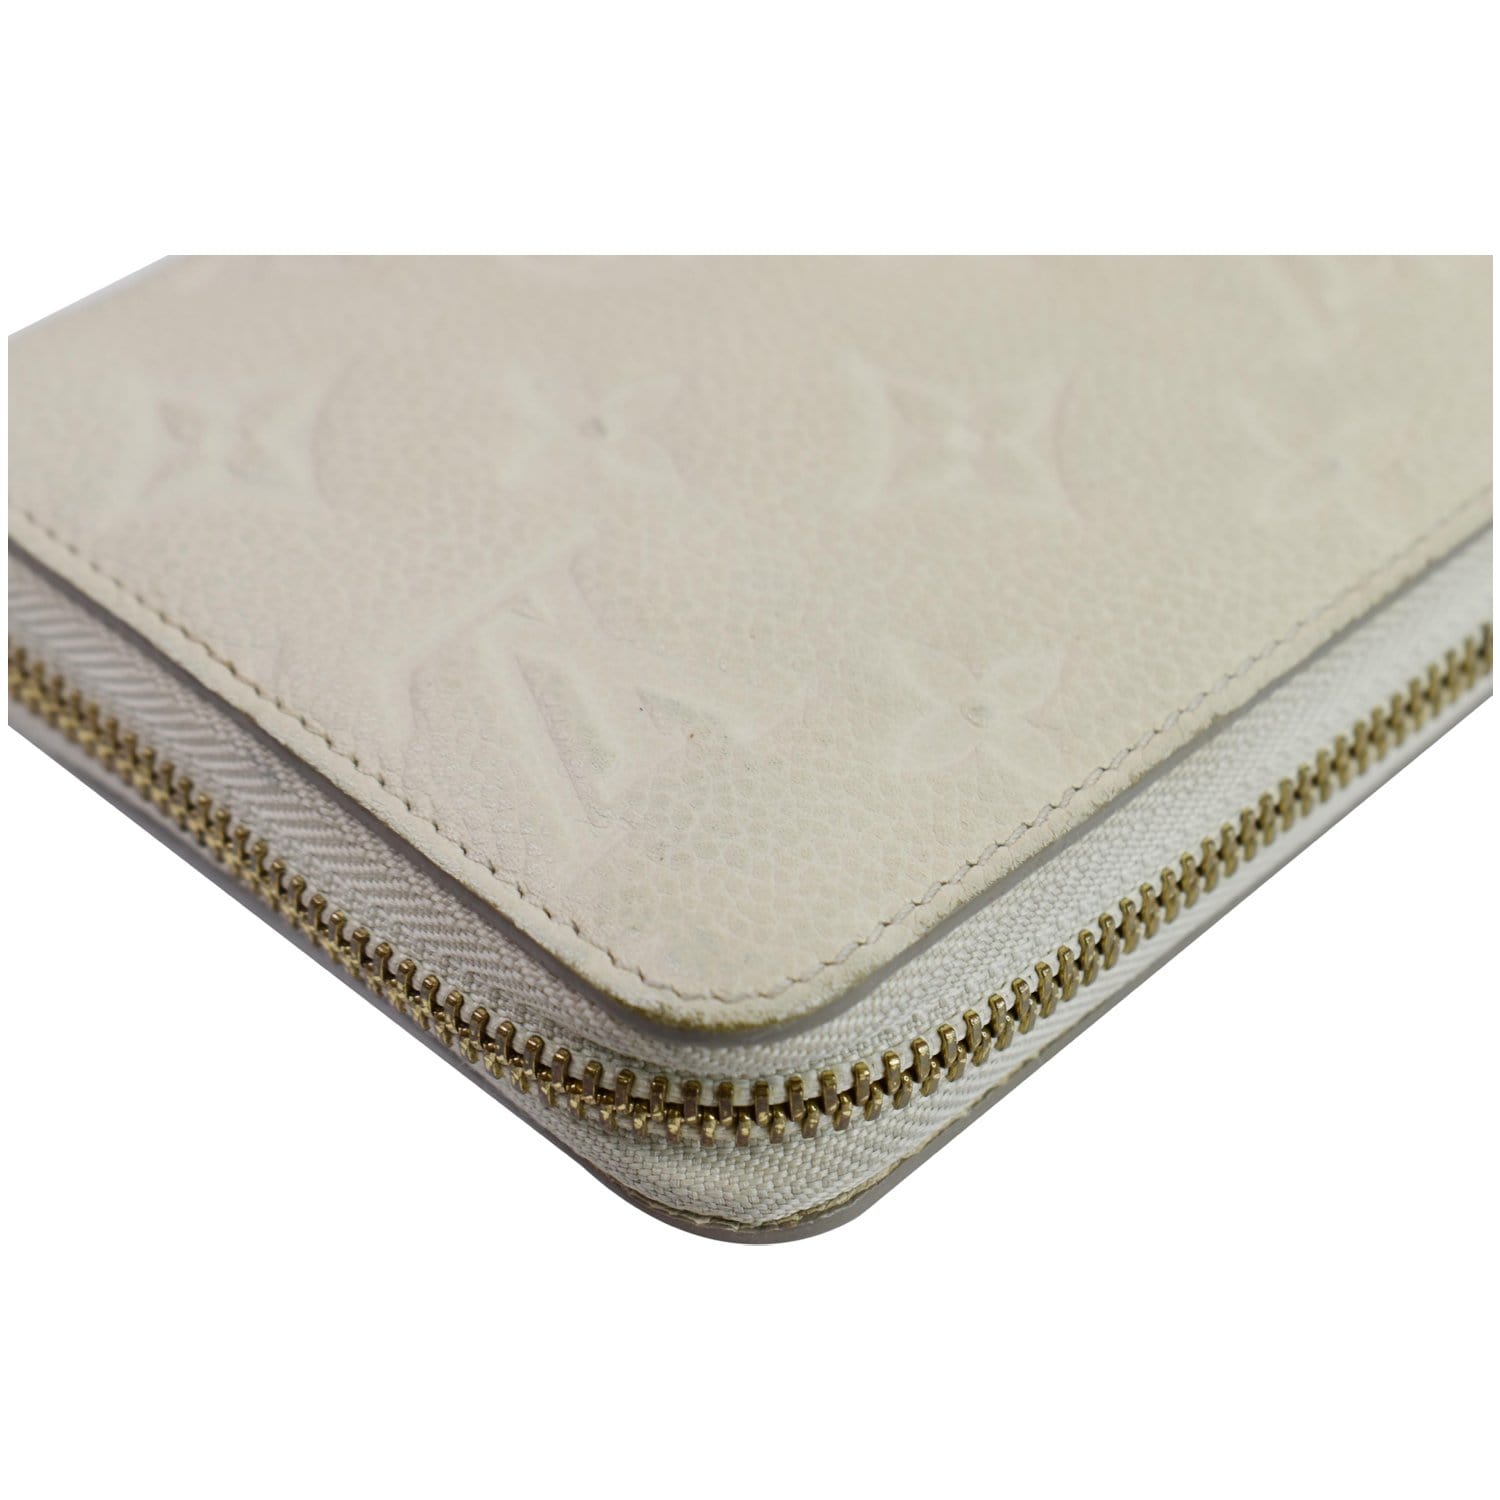 Louis Vuitton Wallet Trunk Monogram Empreinte White in Calfskin with White  - ES